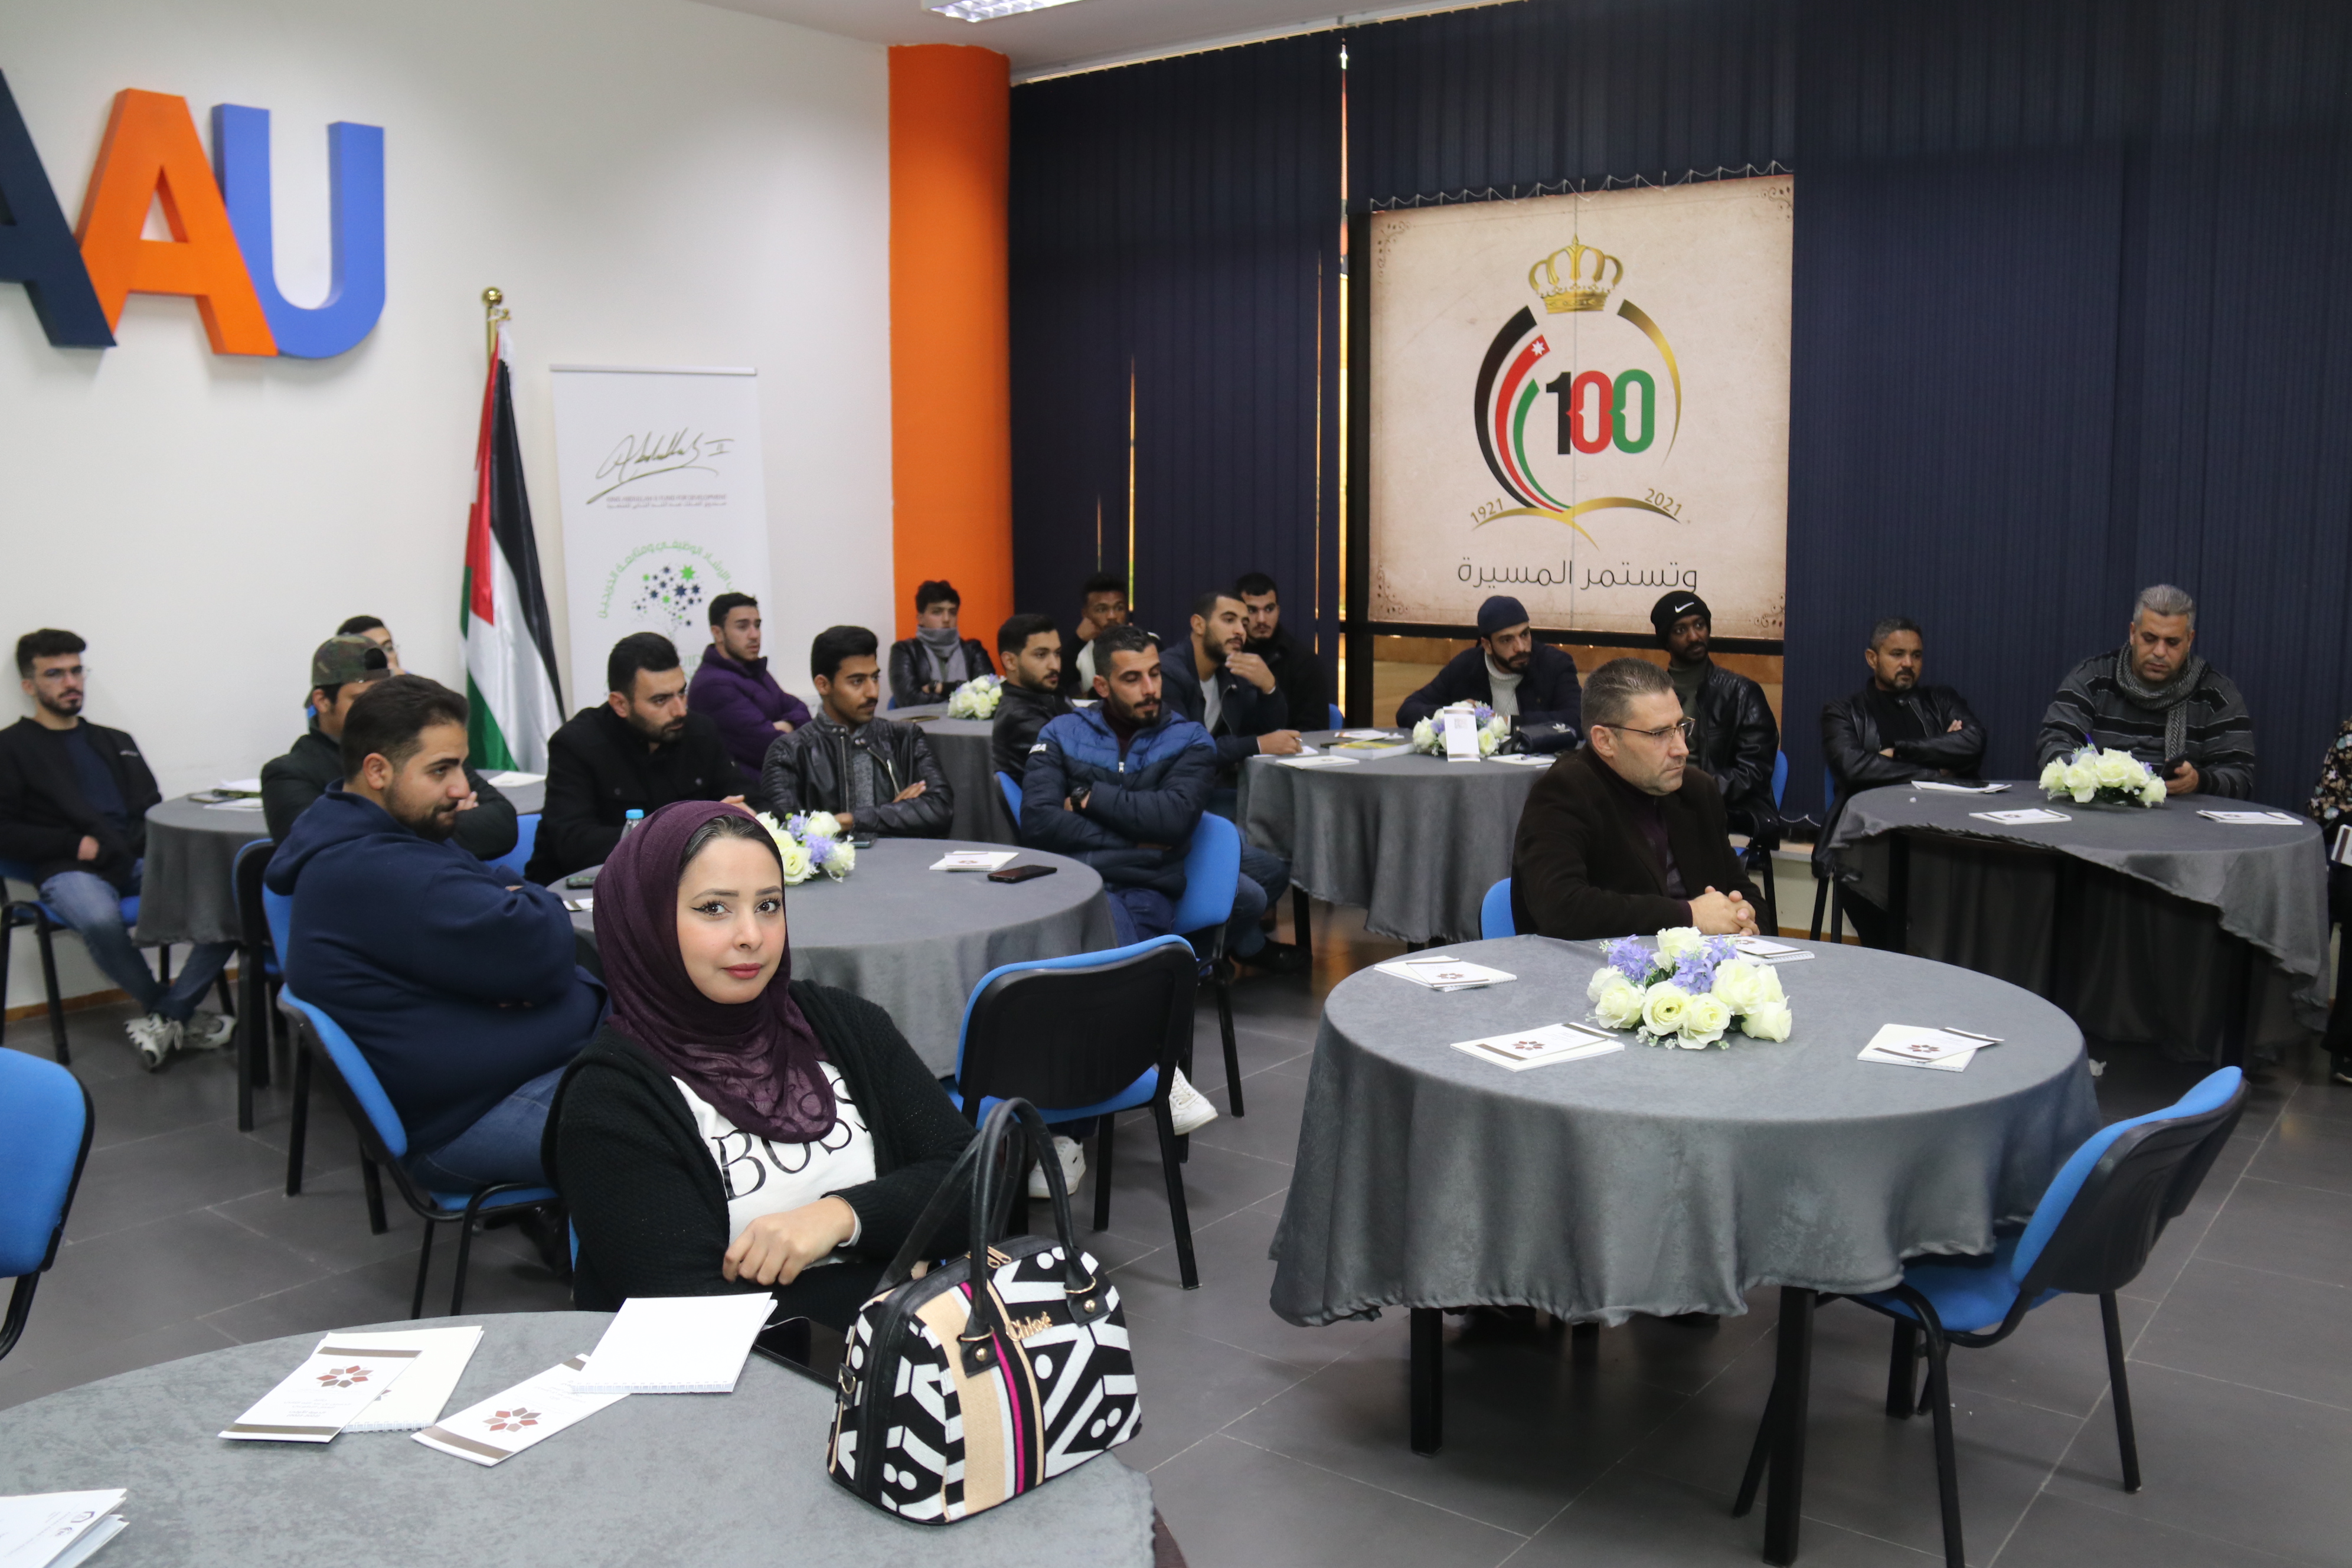 جلسة بـ"عمان العربية" للتعريف بجائزة الحسين بن عبد الله الثاني للعمل التطوعي2